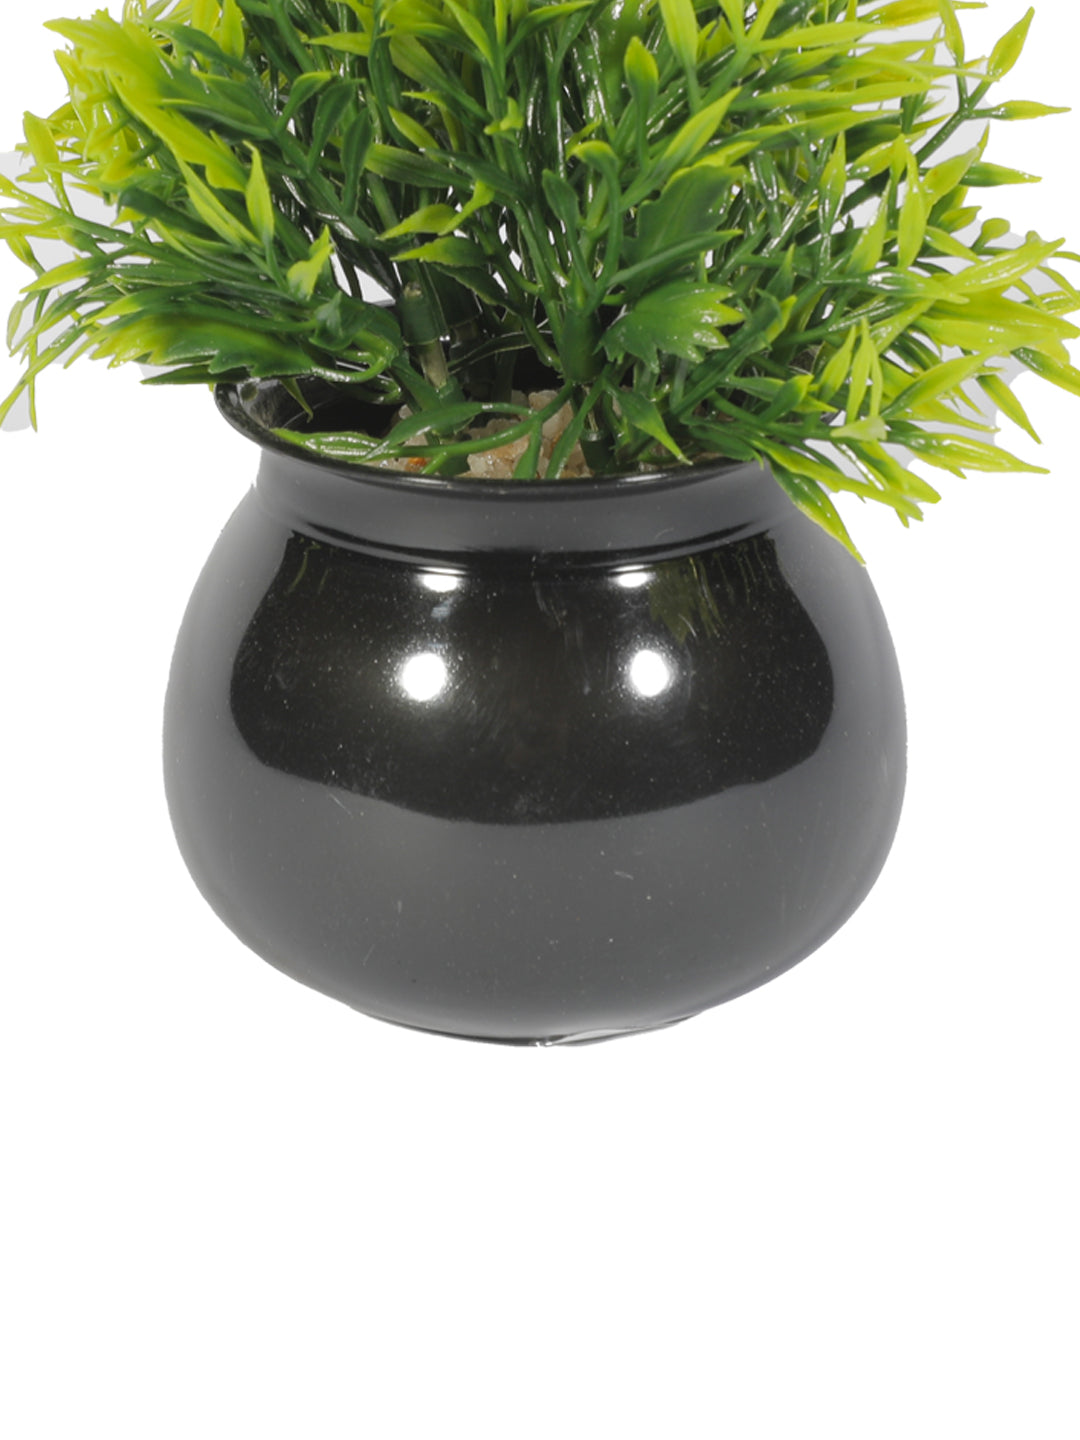 VON CASA Plastic Flower With Pot - Black 